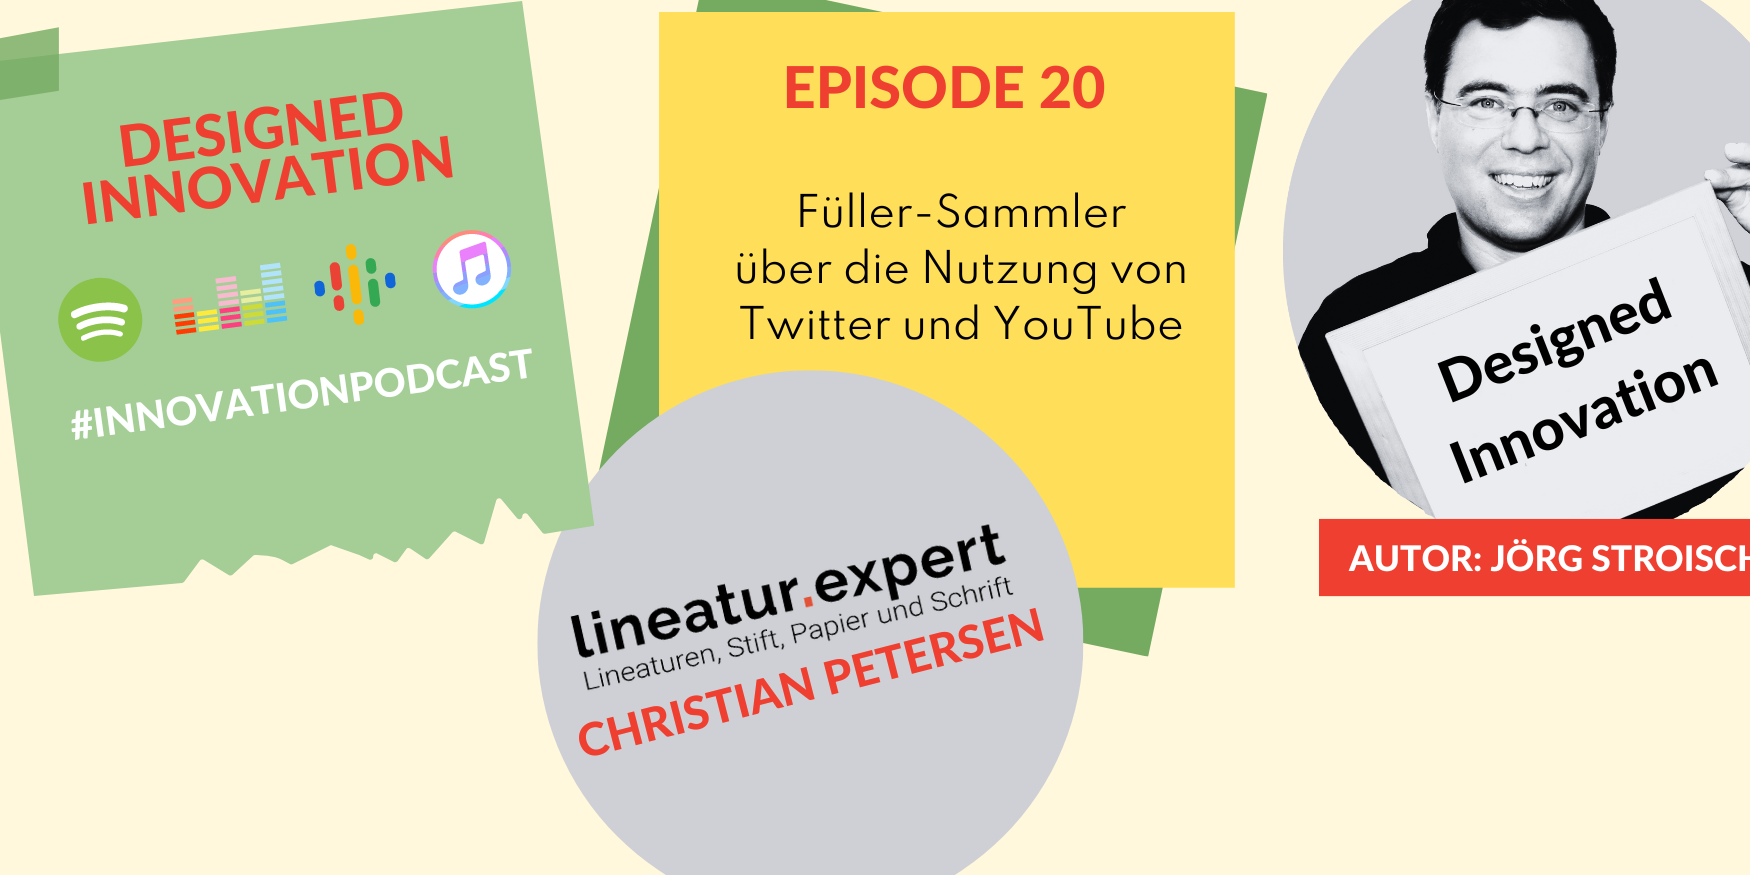 Christian Petersen erzählt in diesem Podcast, wie er Social Media für sein Hobby nutzt.